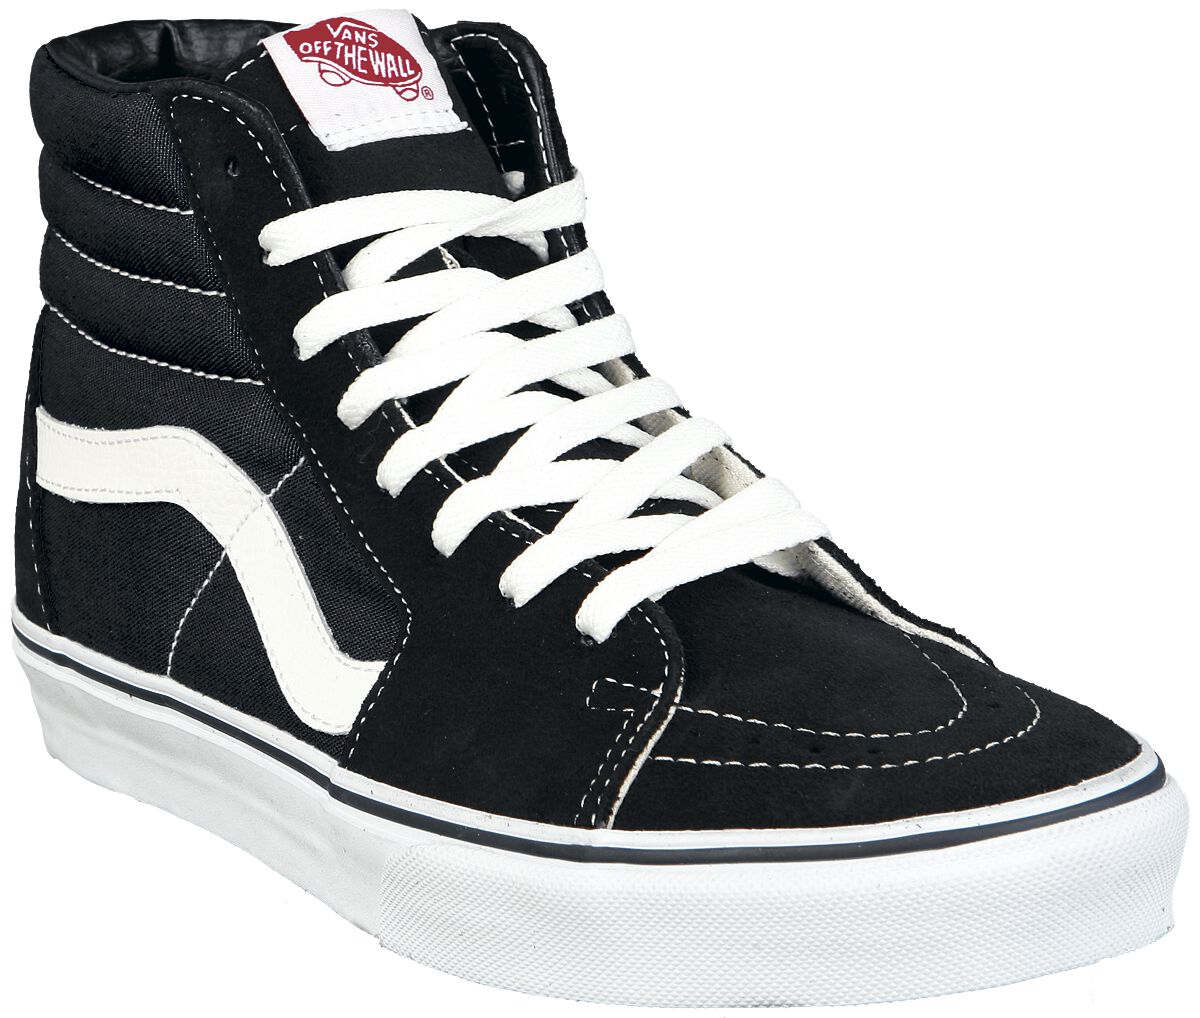 Vans Sneaker high - SK8-Hi - EU37 bis EU47 - Größe EU37 - schwarz/weiß